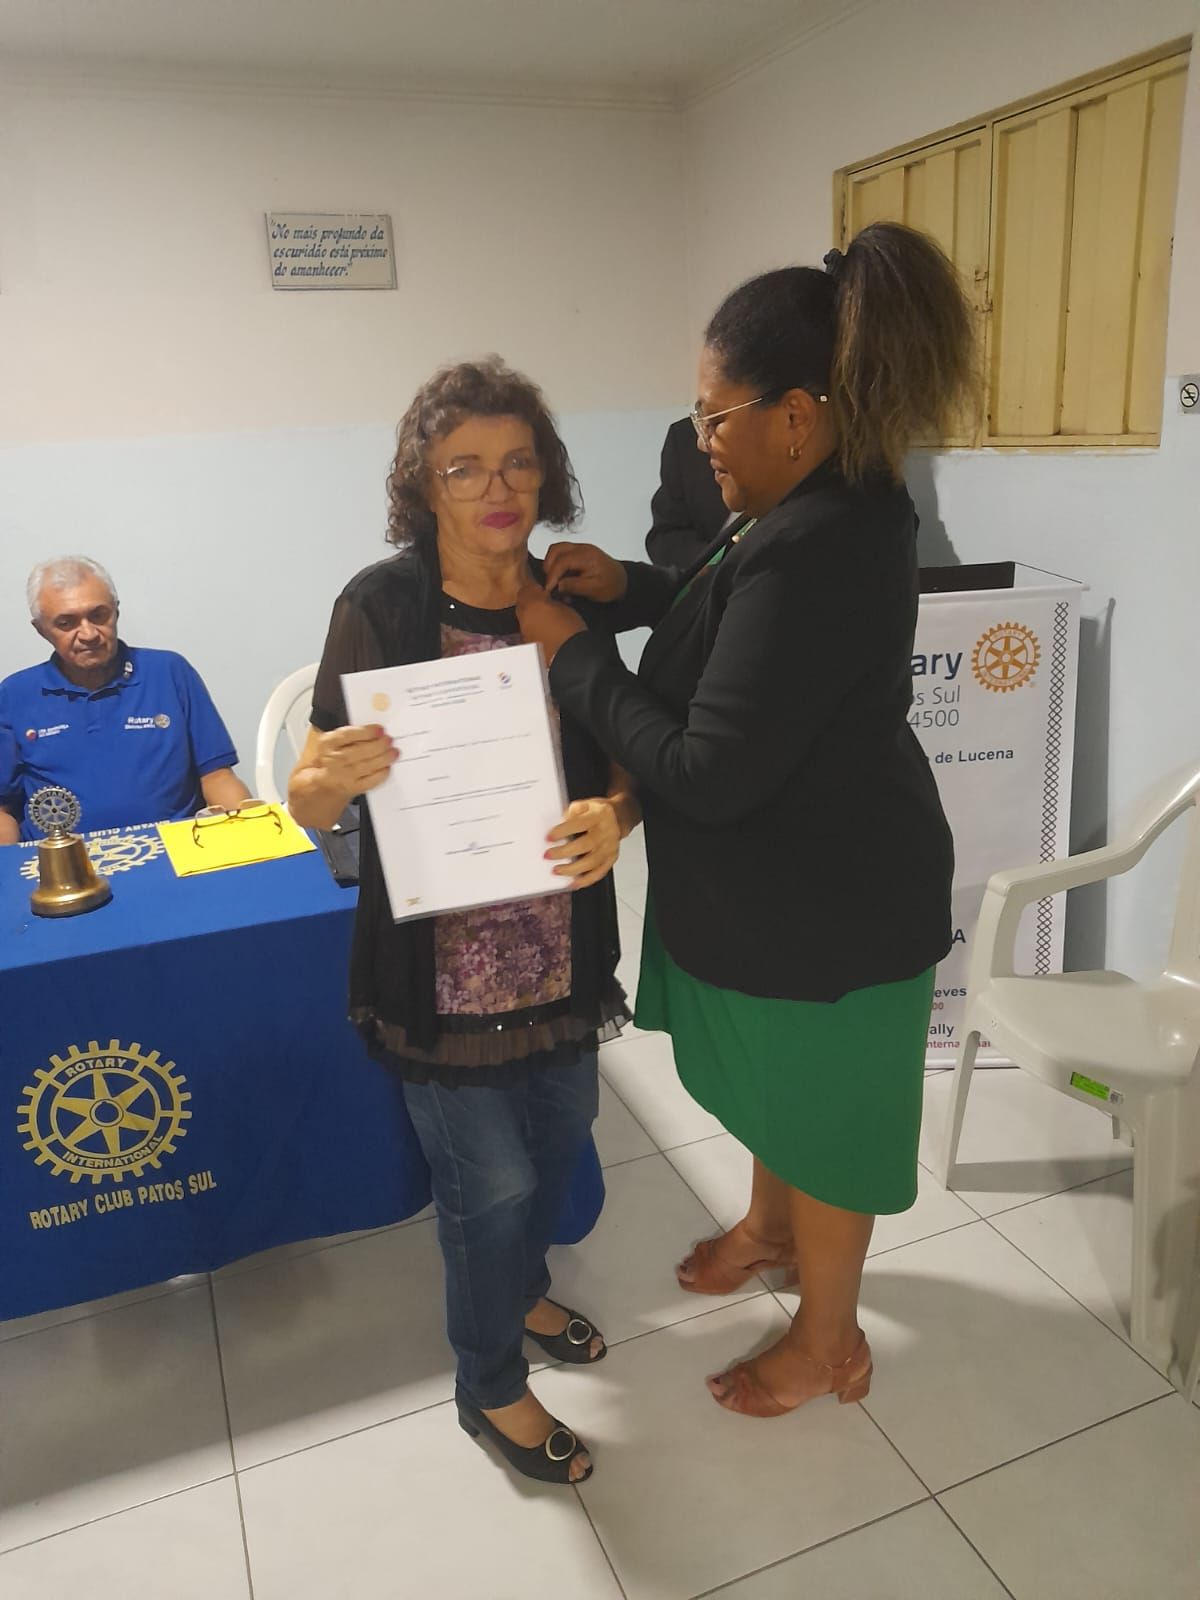 Morre Maria do Carmo Formiga, integrante do Rotary Clube, nesta terça-feira (9), vítima de problemas renais